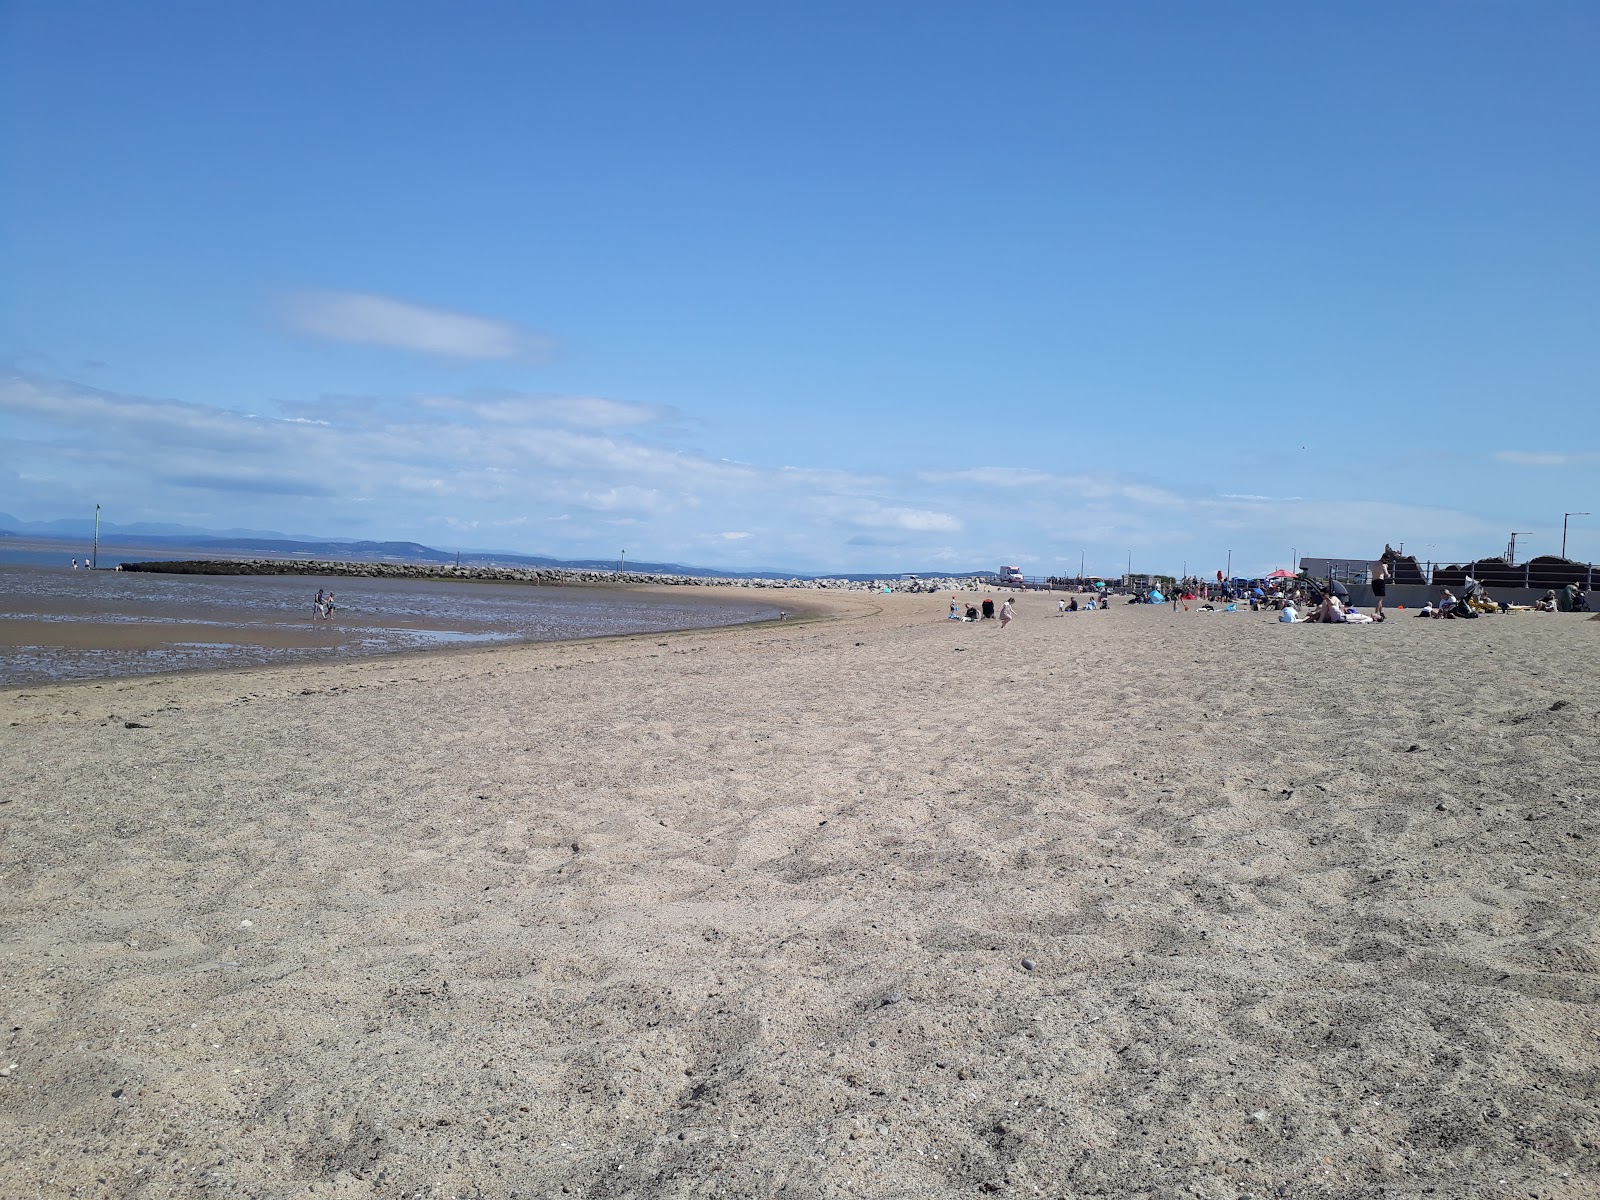 Finish Beach'in fotoğrafı geniş plaj ile birlikte